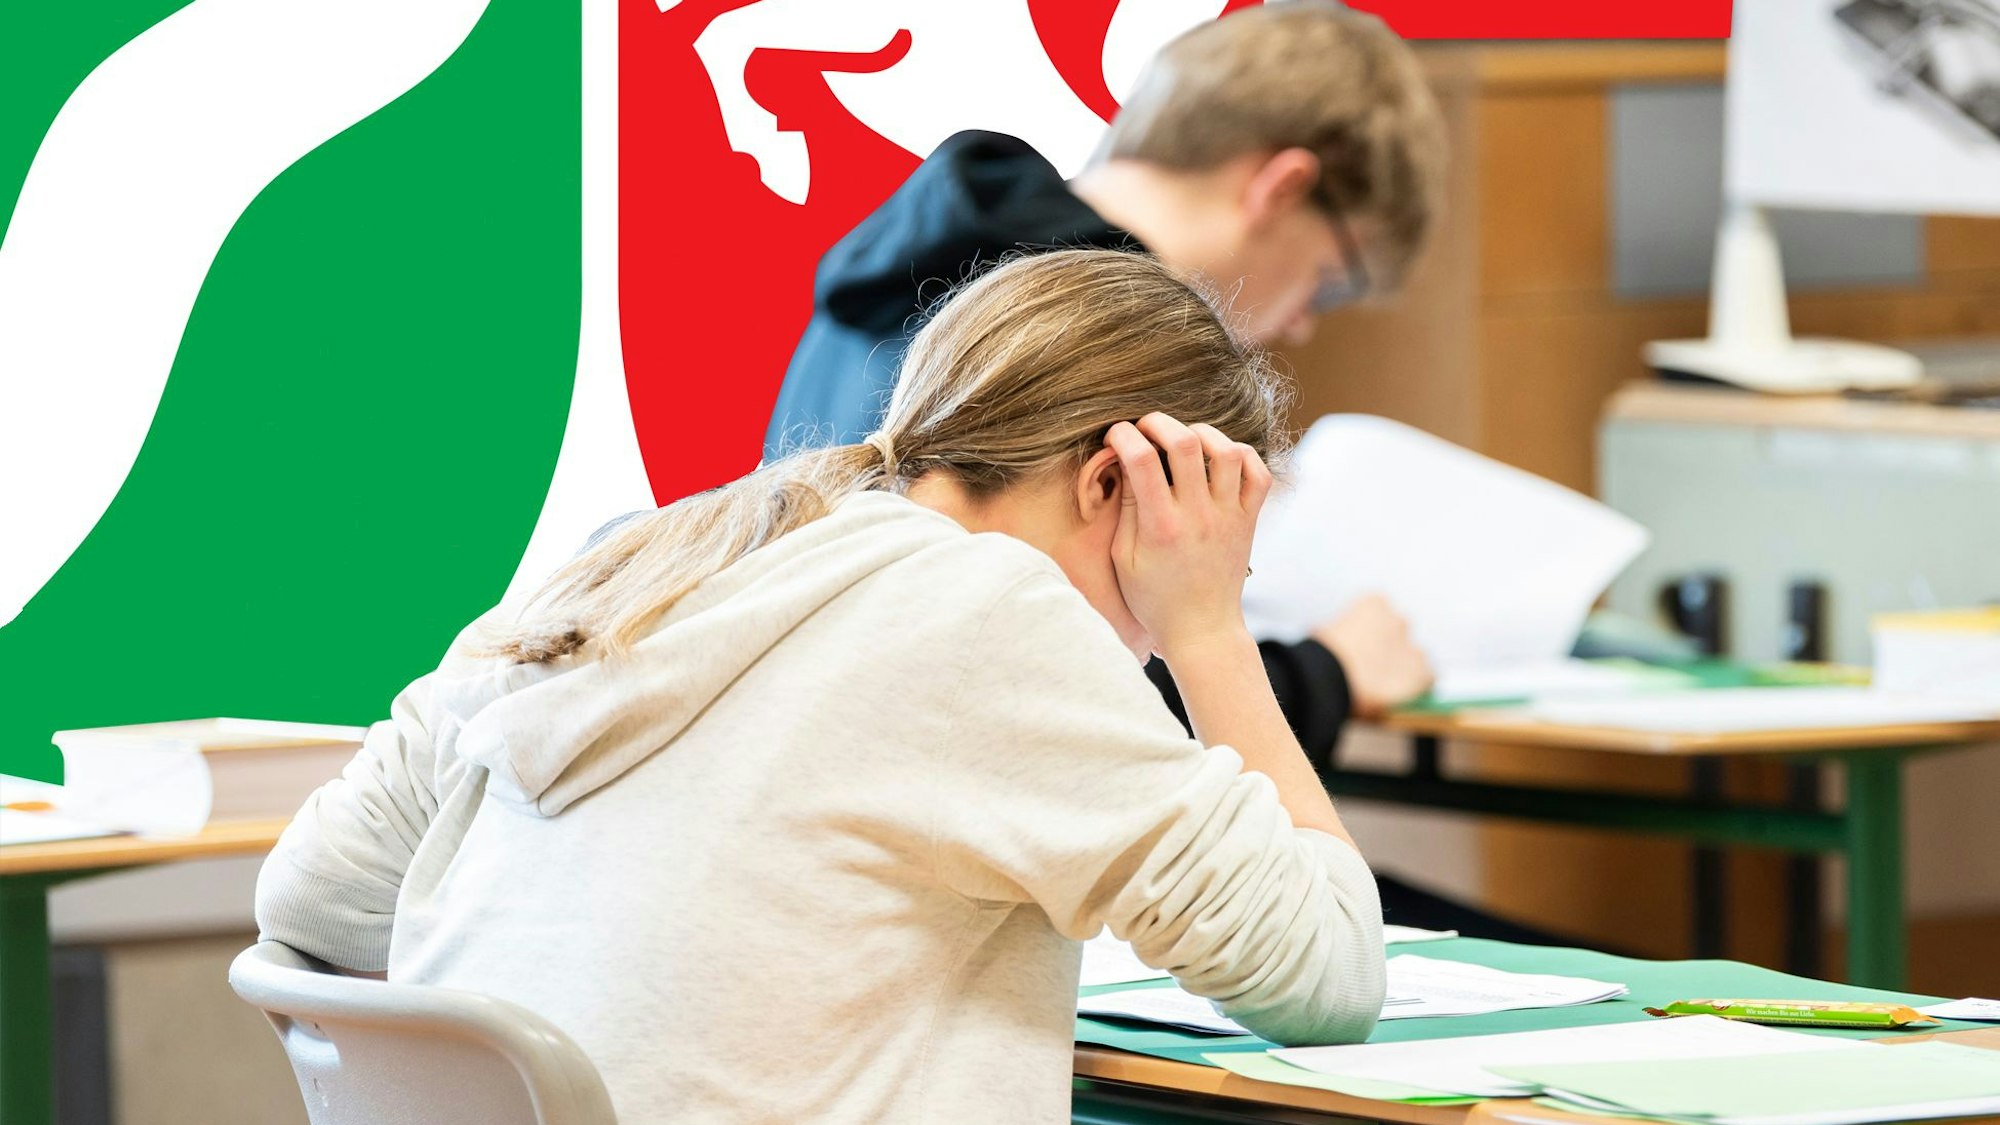 Schüler beugen sich über Prüfungsaufgaben. Im Hintergrund hängt eine NRW-Flagge.